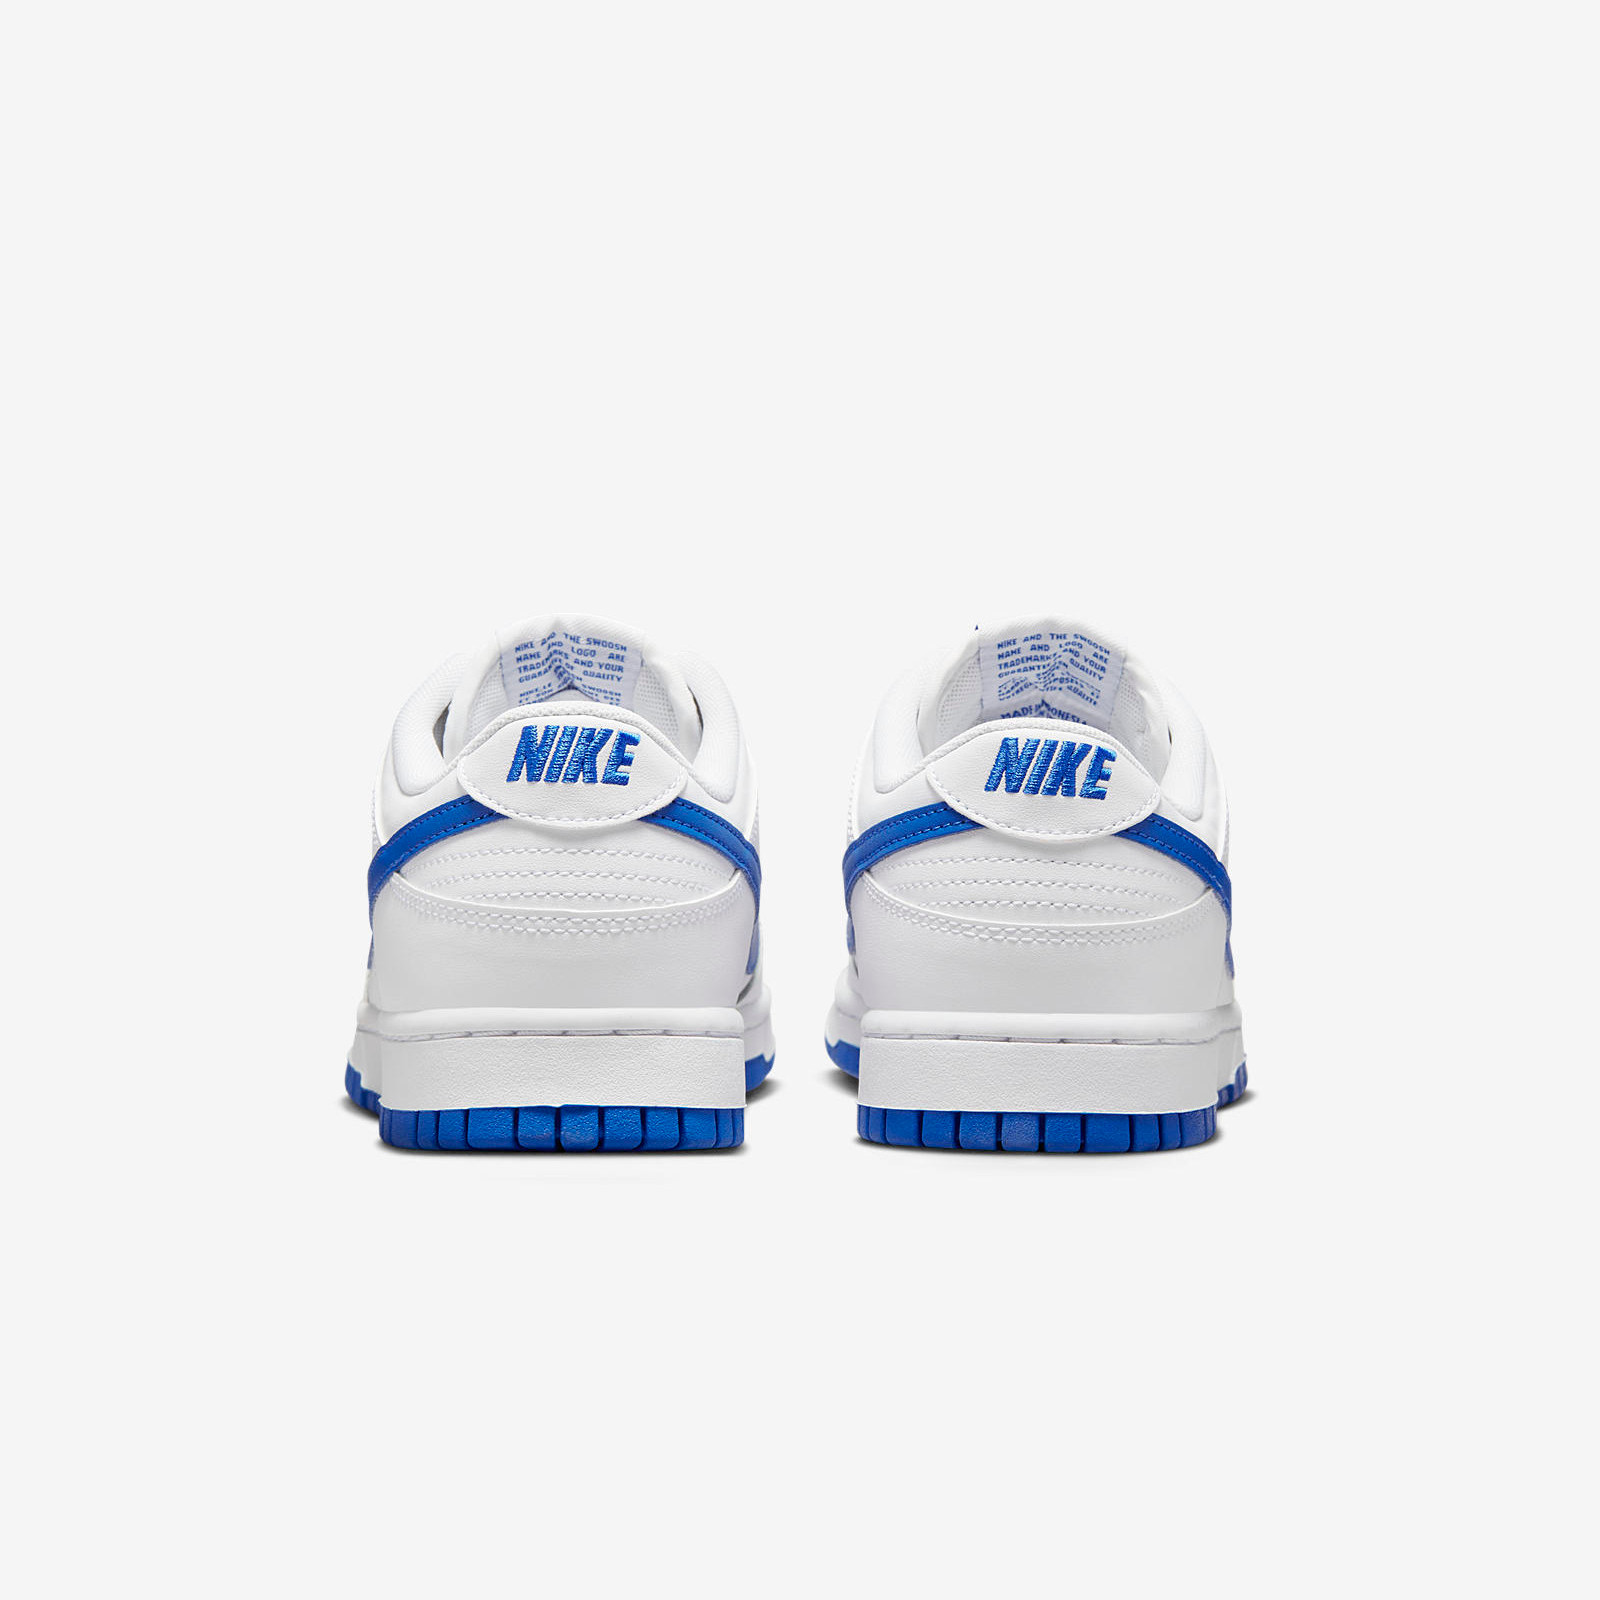 Nike Dunk Low
White / Hyper Royal